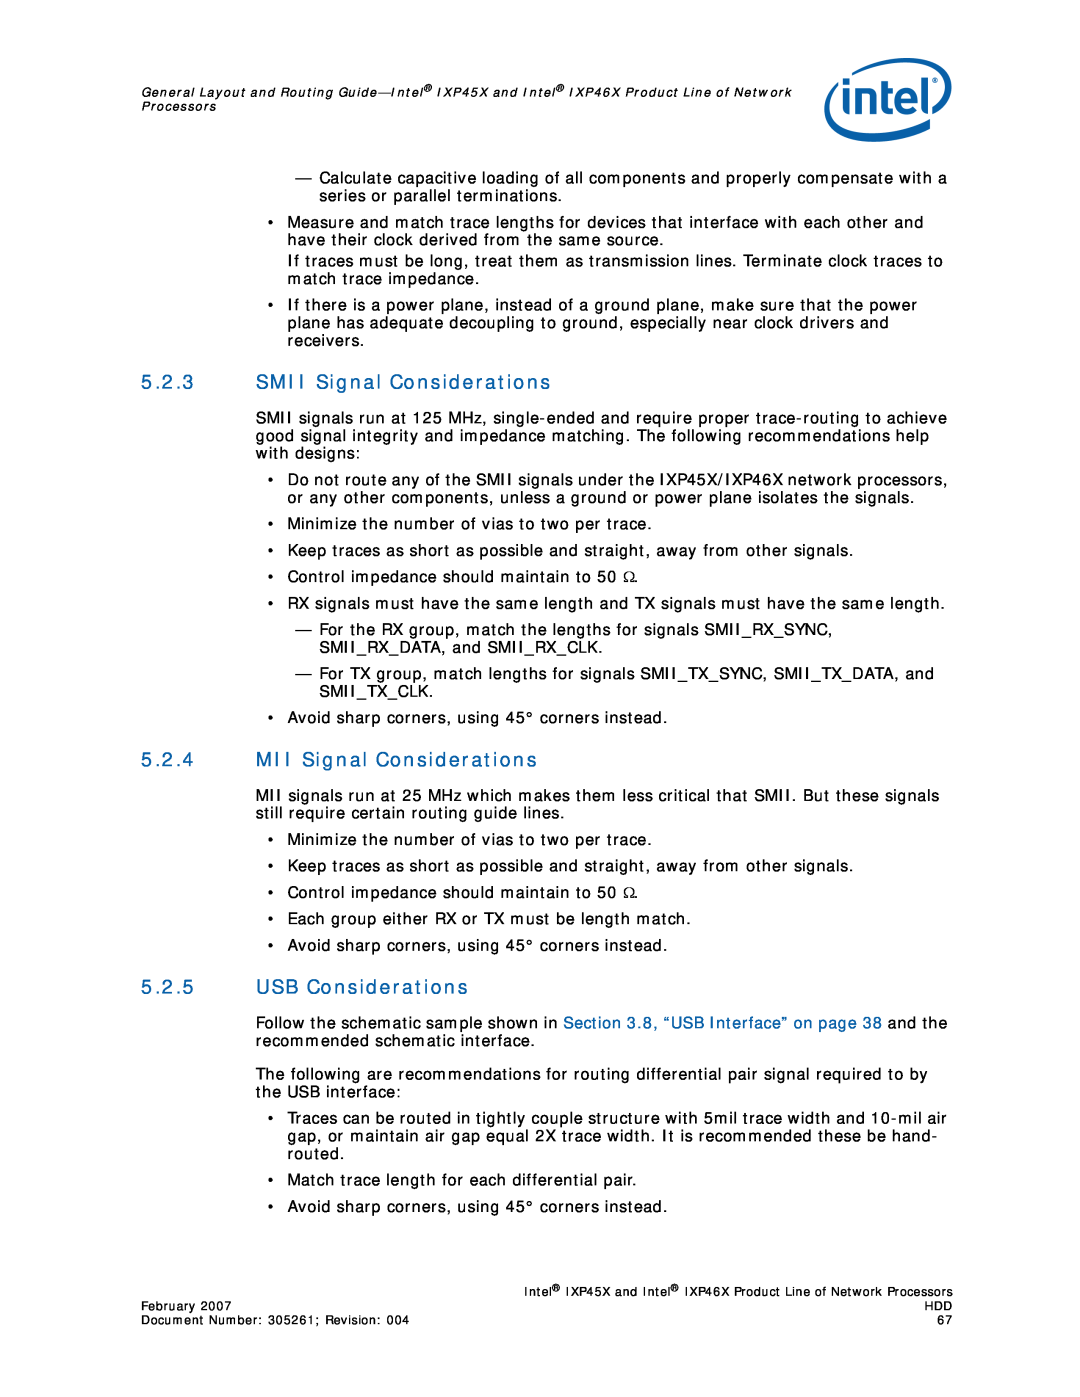 Intel IXP45X, IXP46X manual 5.2.3SMII Signal Considerations, 5.2.4MII Signal Considerations, 5.2.5USB Considerations 